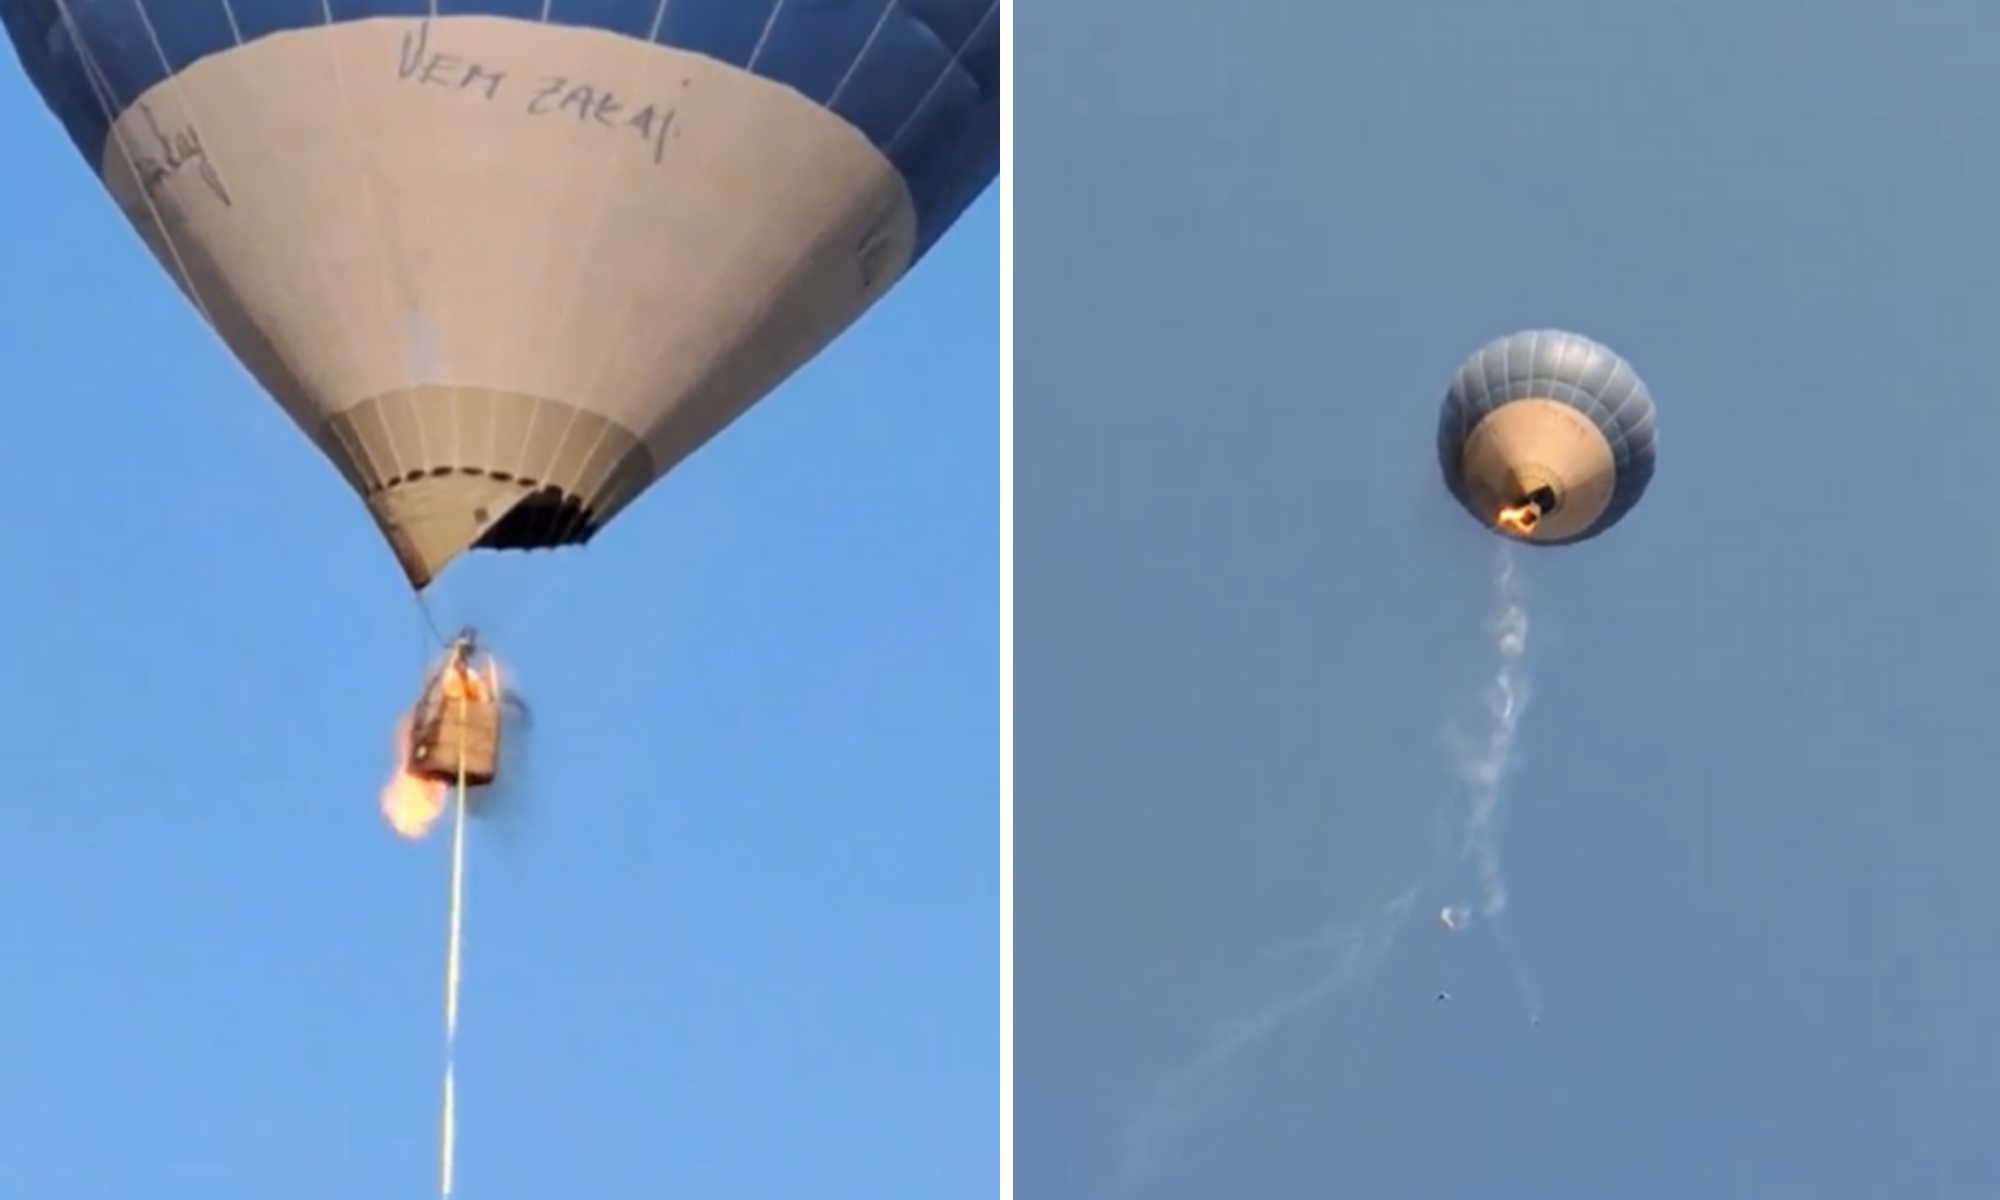 Сгорел шар. Летающий воздушный шар. Воздушный шар упал. Загорелся воздушный шар. Человек на воздушном шаре.